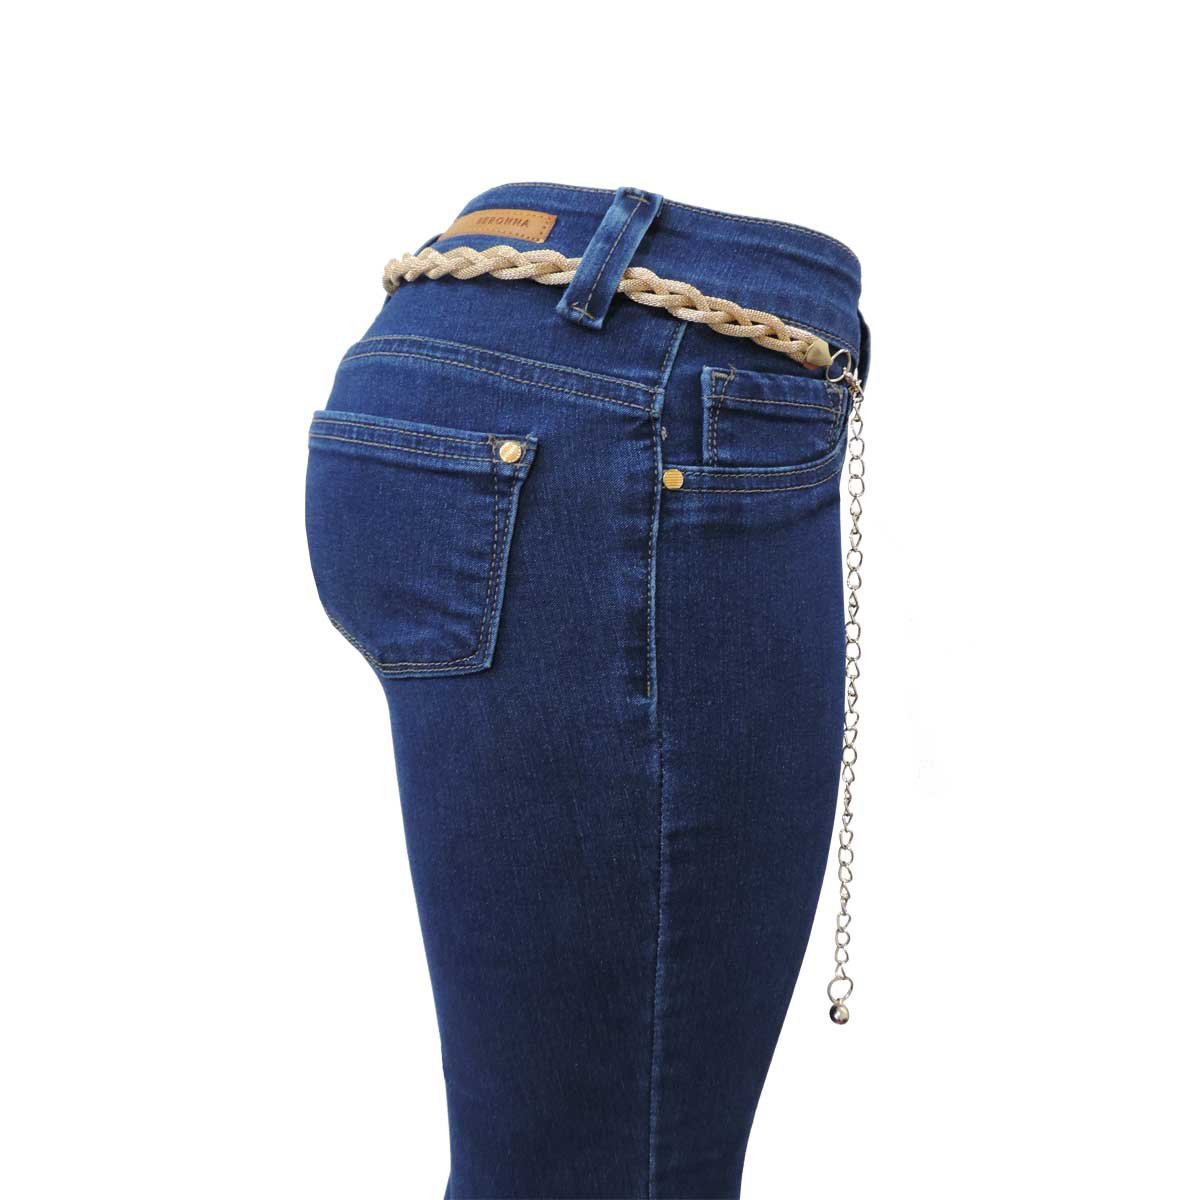 Jeans con Cinturon Jeans Beronna